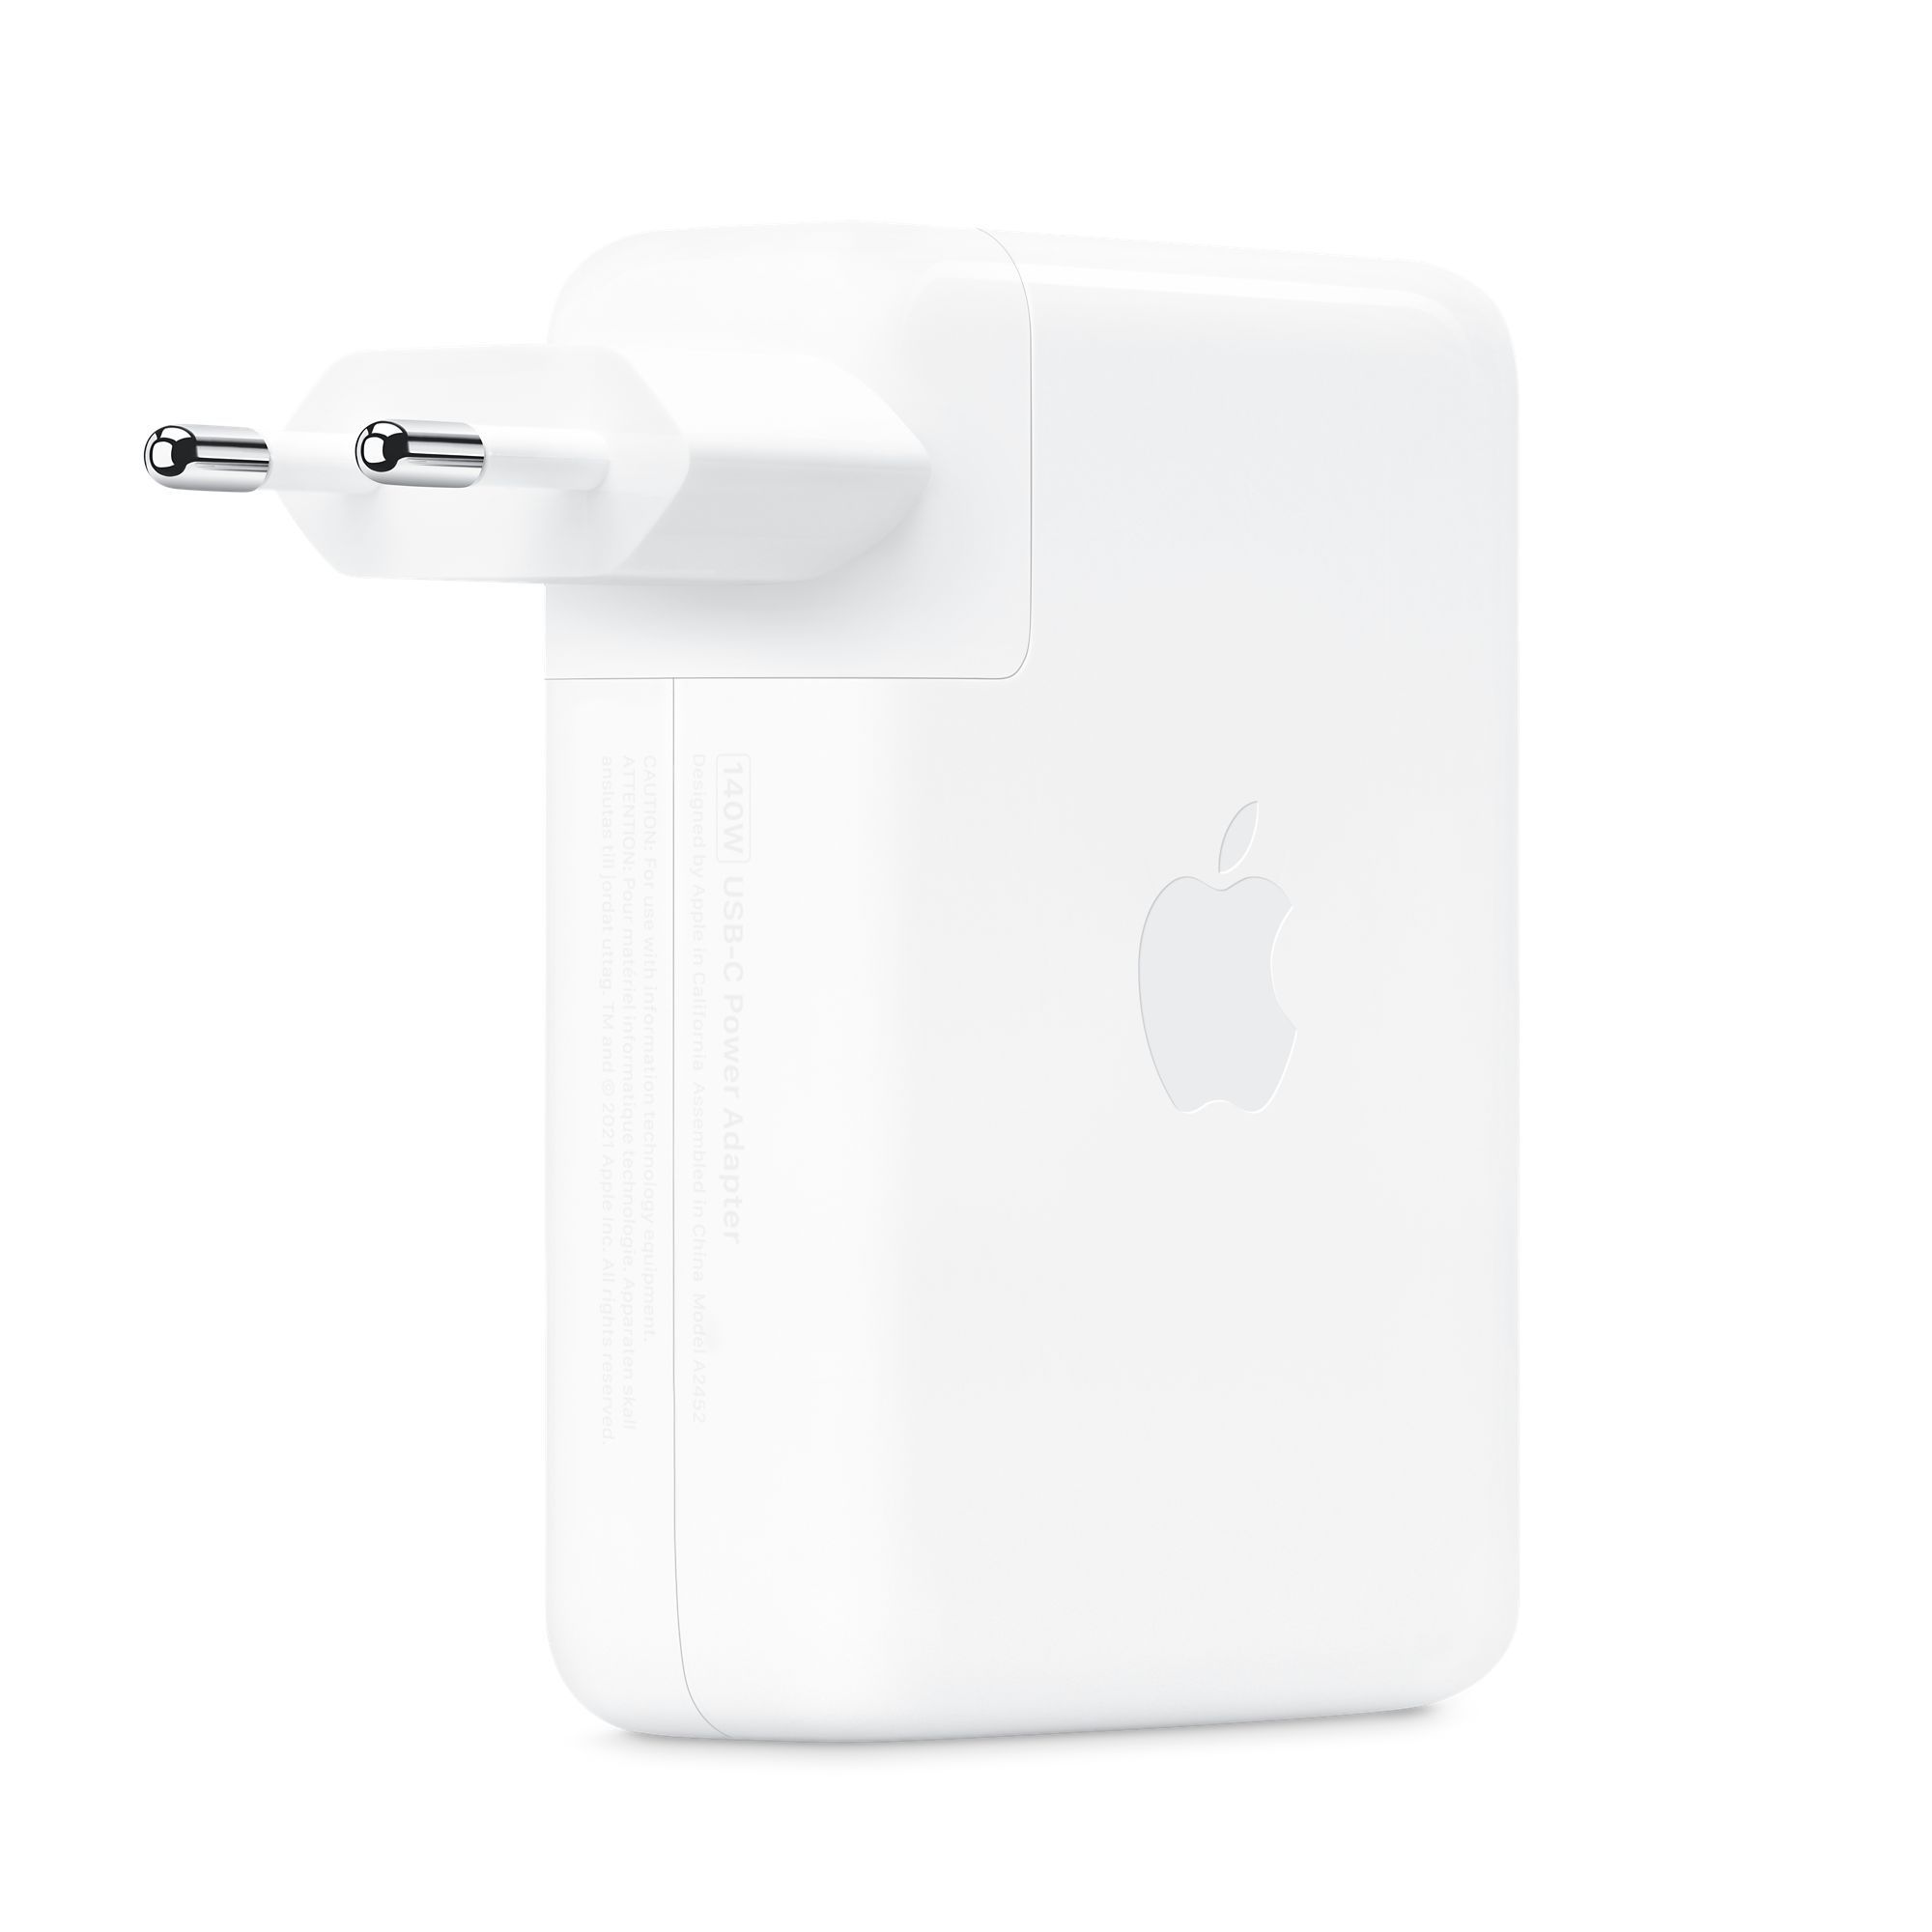  Sạc Apple 140W USB-C Power Adapter - Hàng chính hãng 